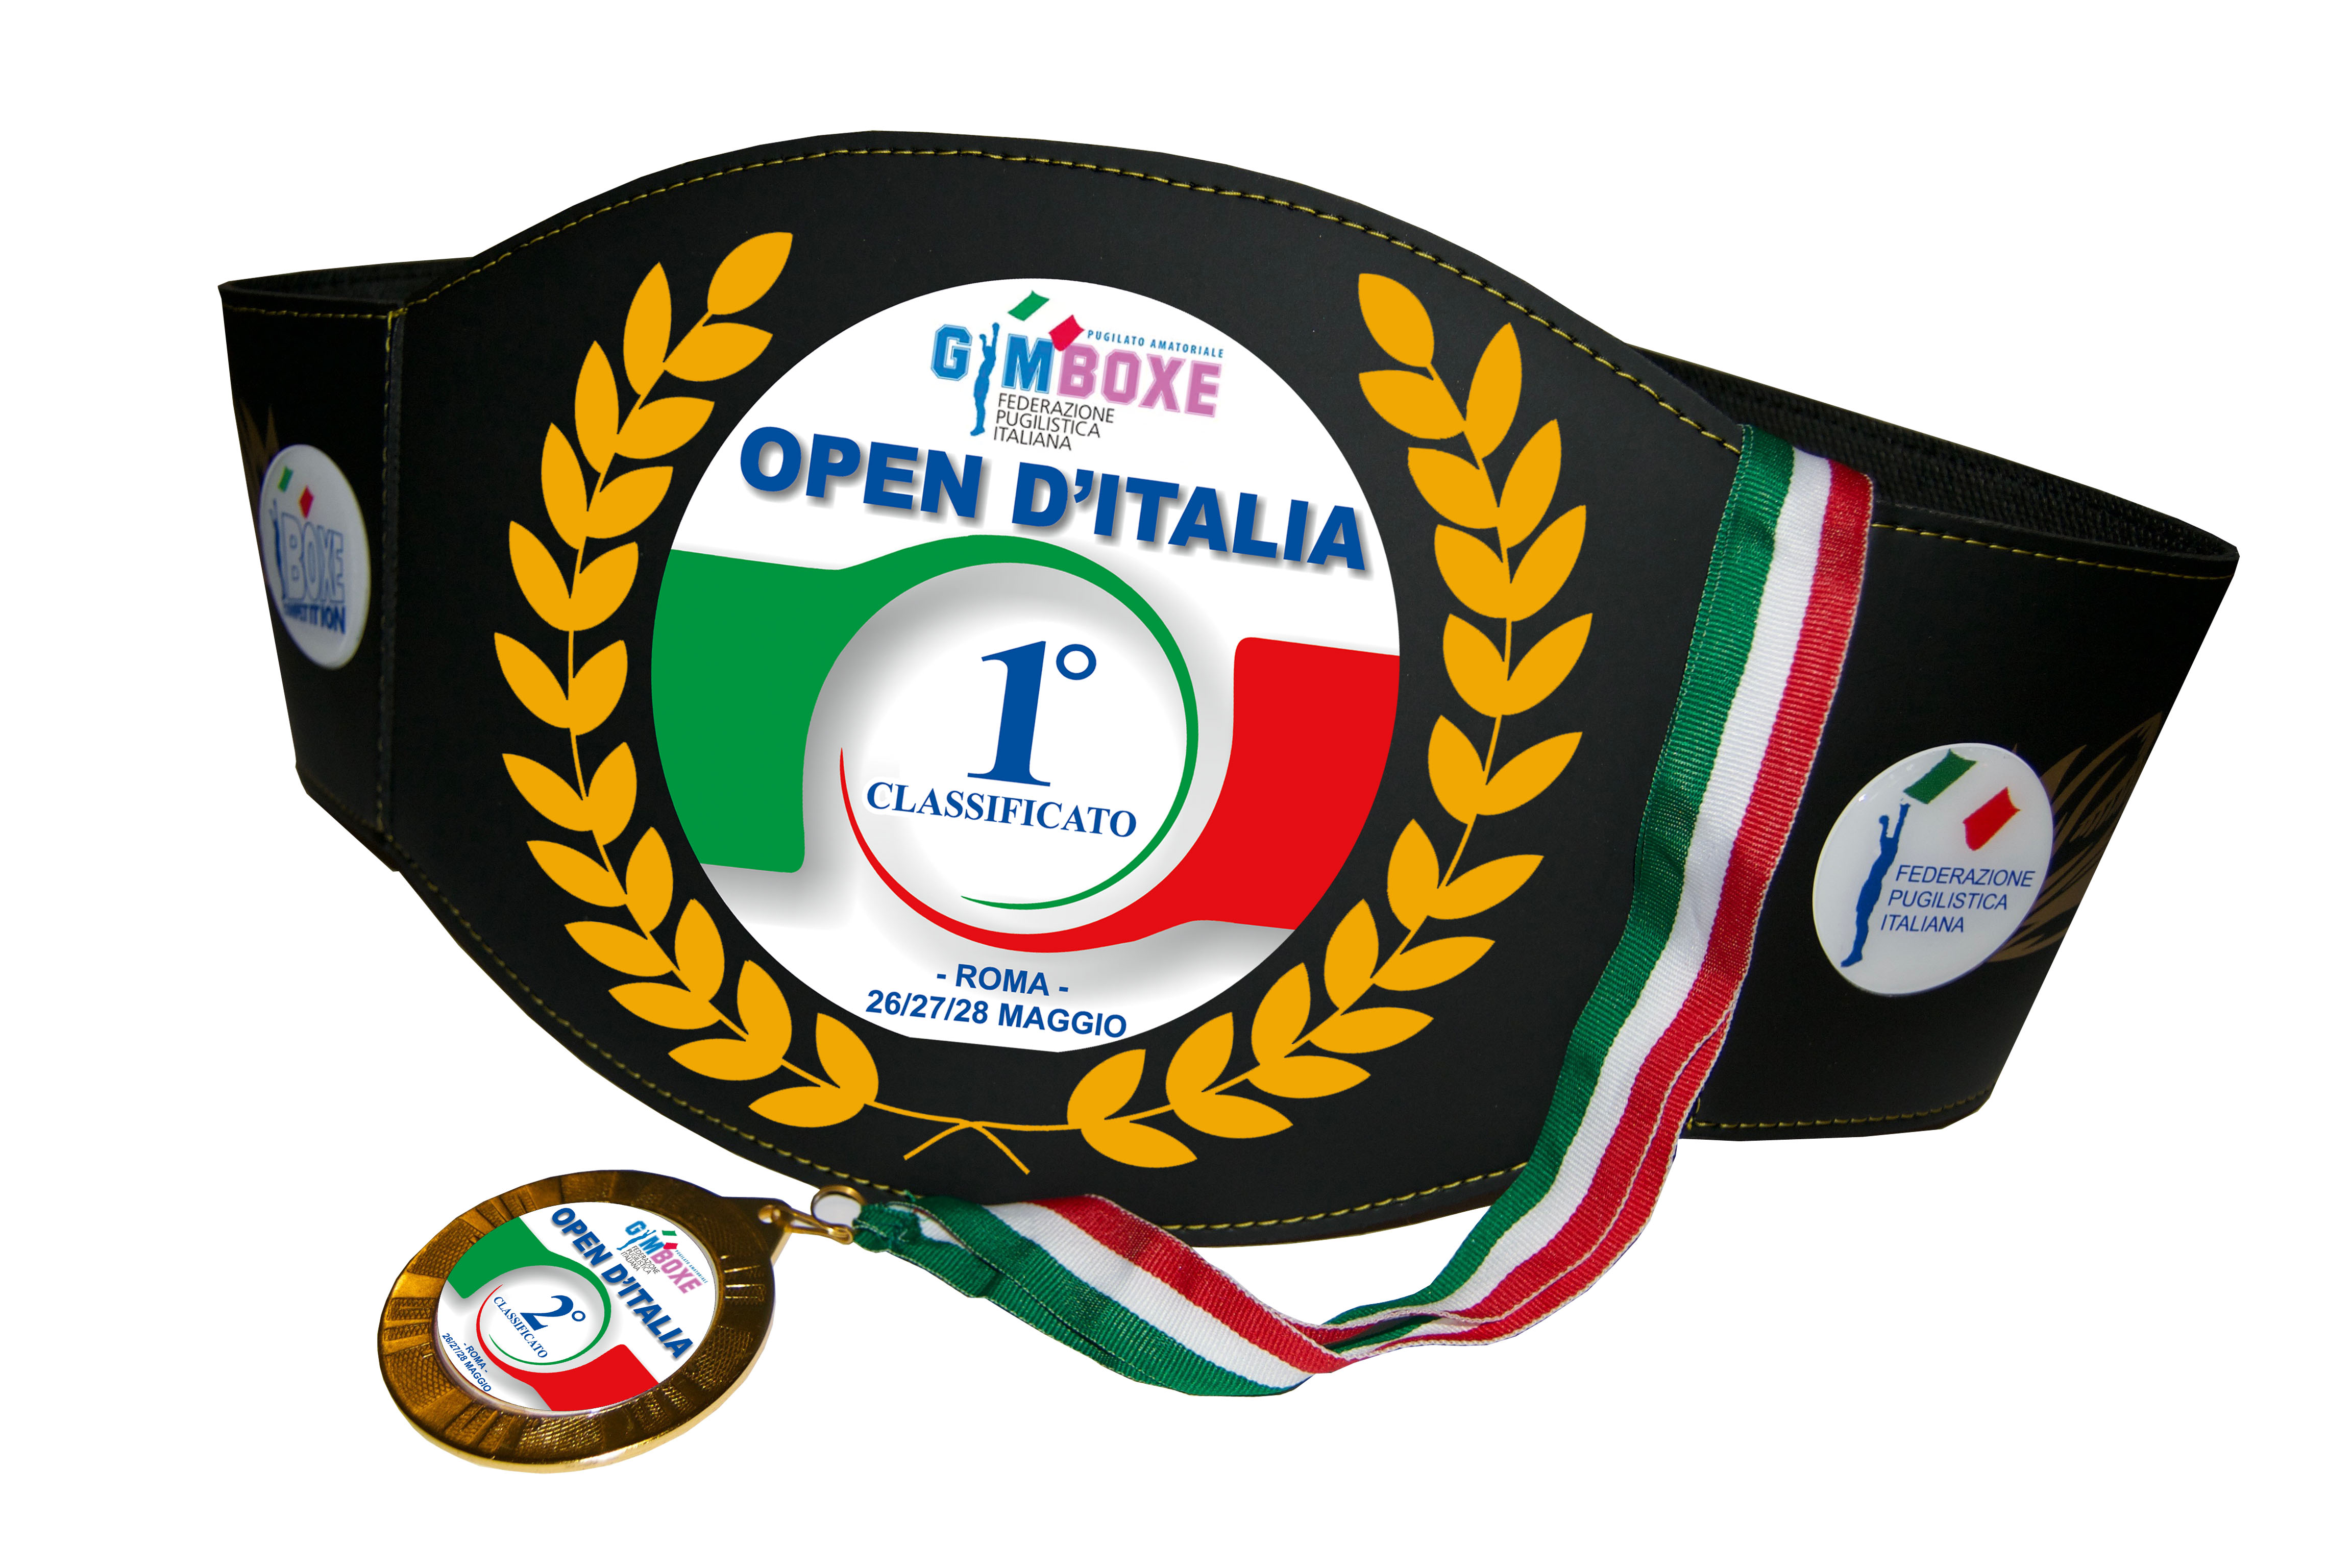 DOmani 17 maggio scade il termine per iscriversi al Torneo Gym Boxe Open D'Italia in programma a Roma il 27/05 pv #GymBoxe